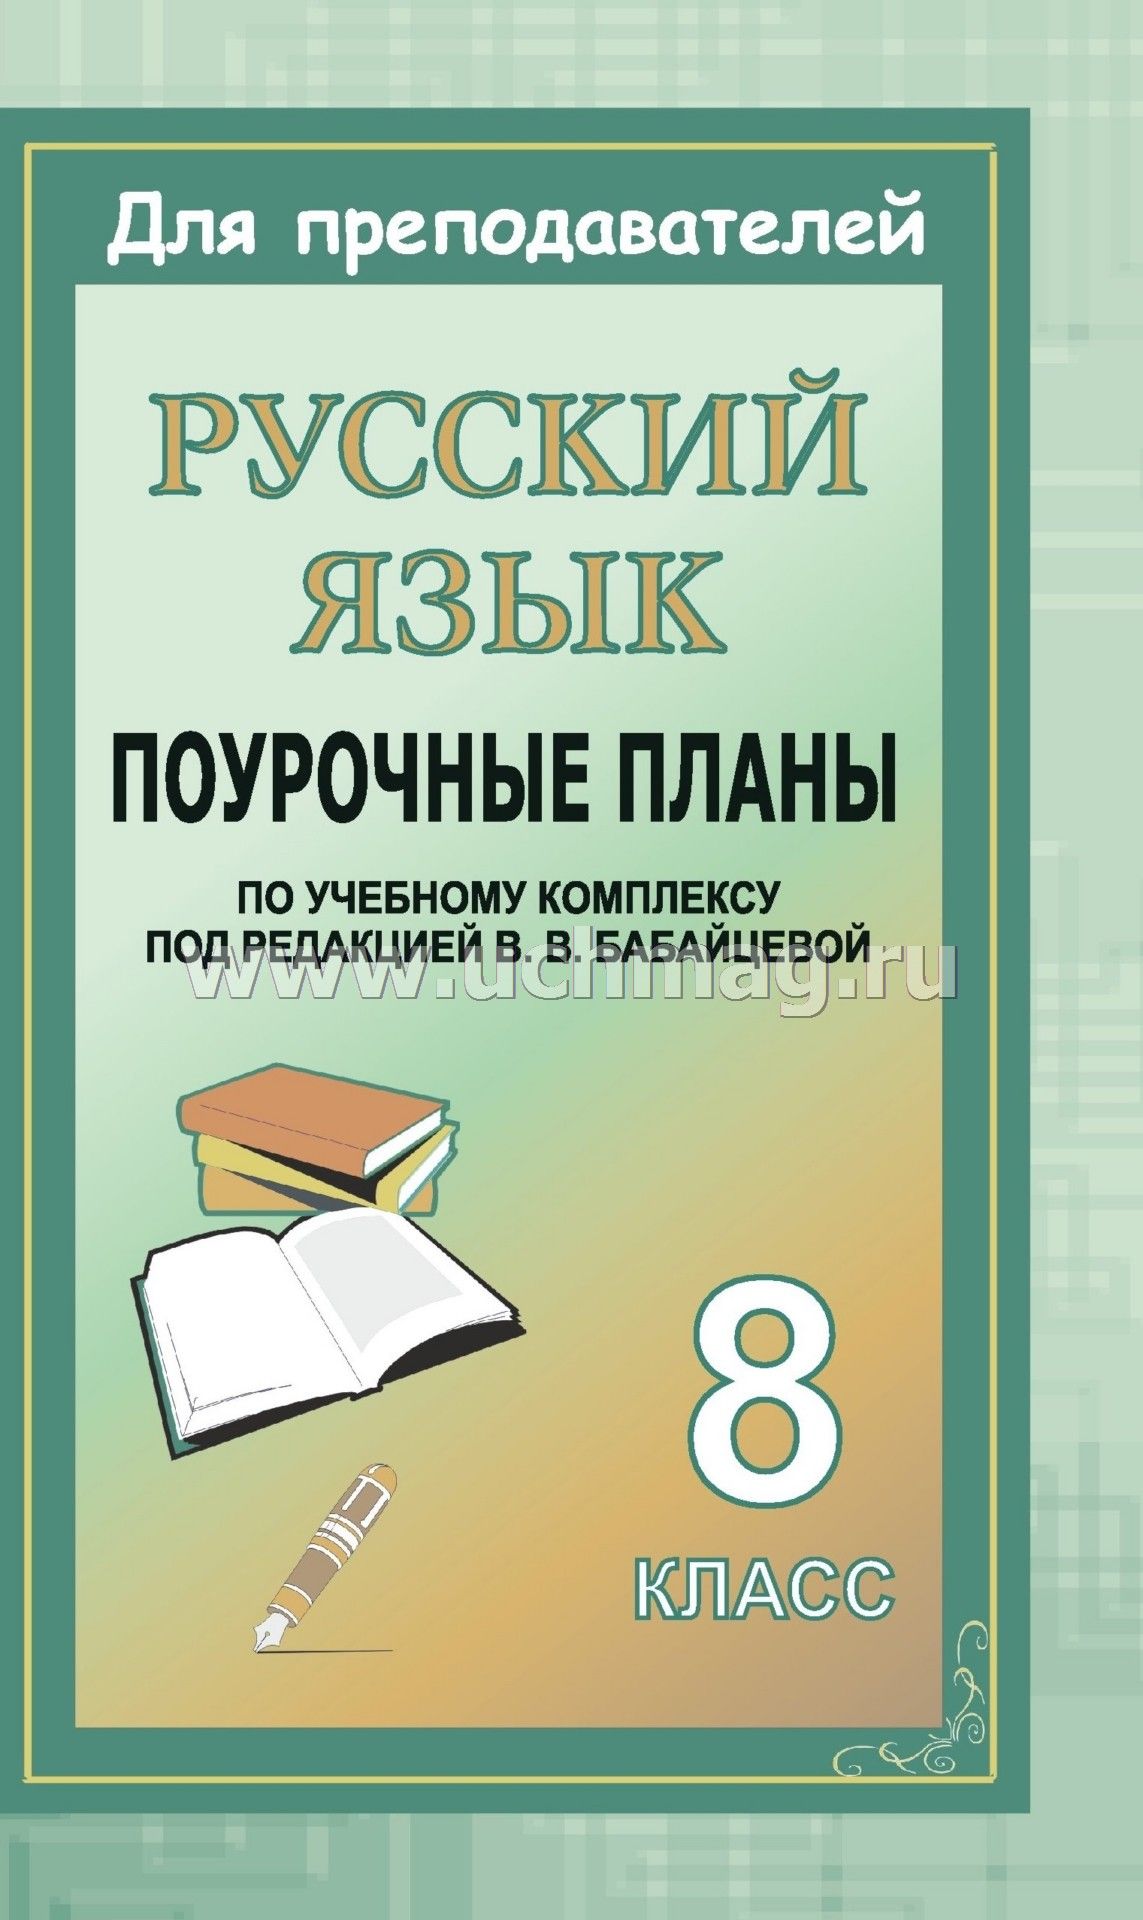 Изложение по русскому языку за полугодие 2017 8 класс